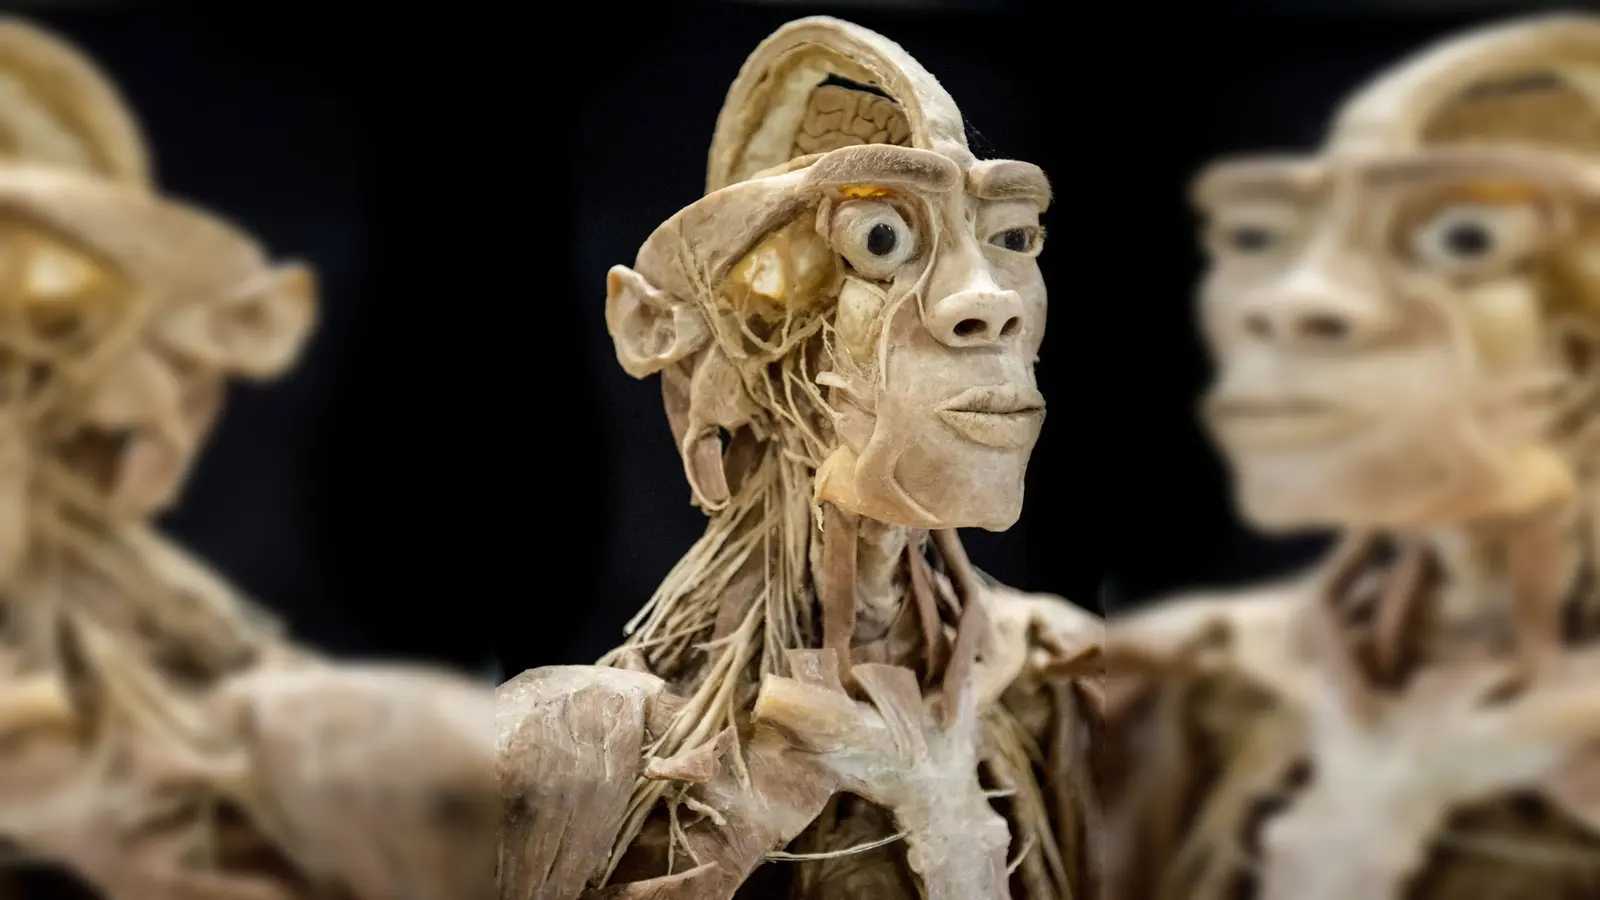 Die Ausstellung vermittelt anhand anatomischer Exponate Wissen über den menschlichen Körper. (Foto: Morten Stricker)